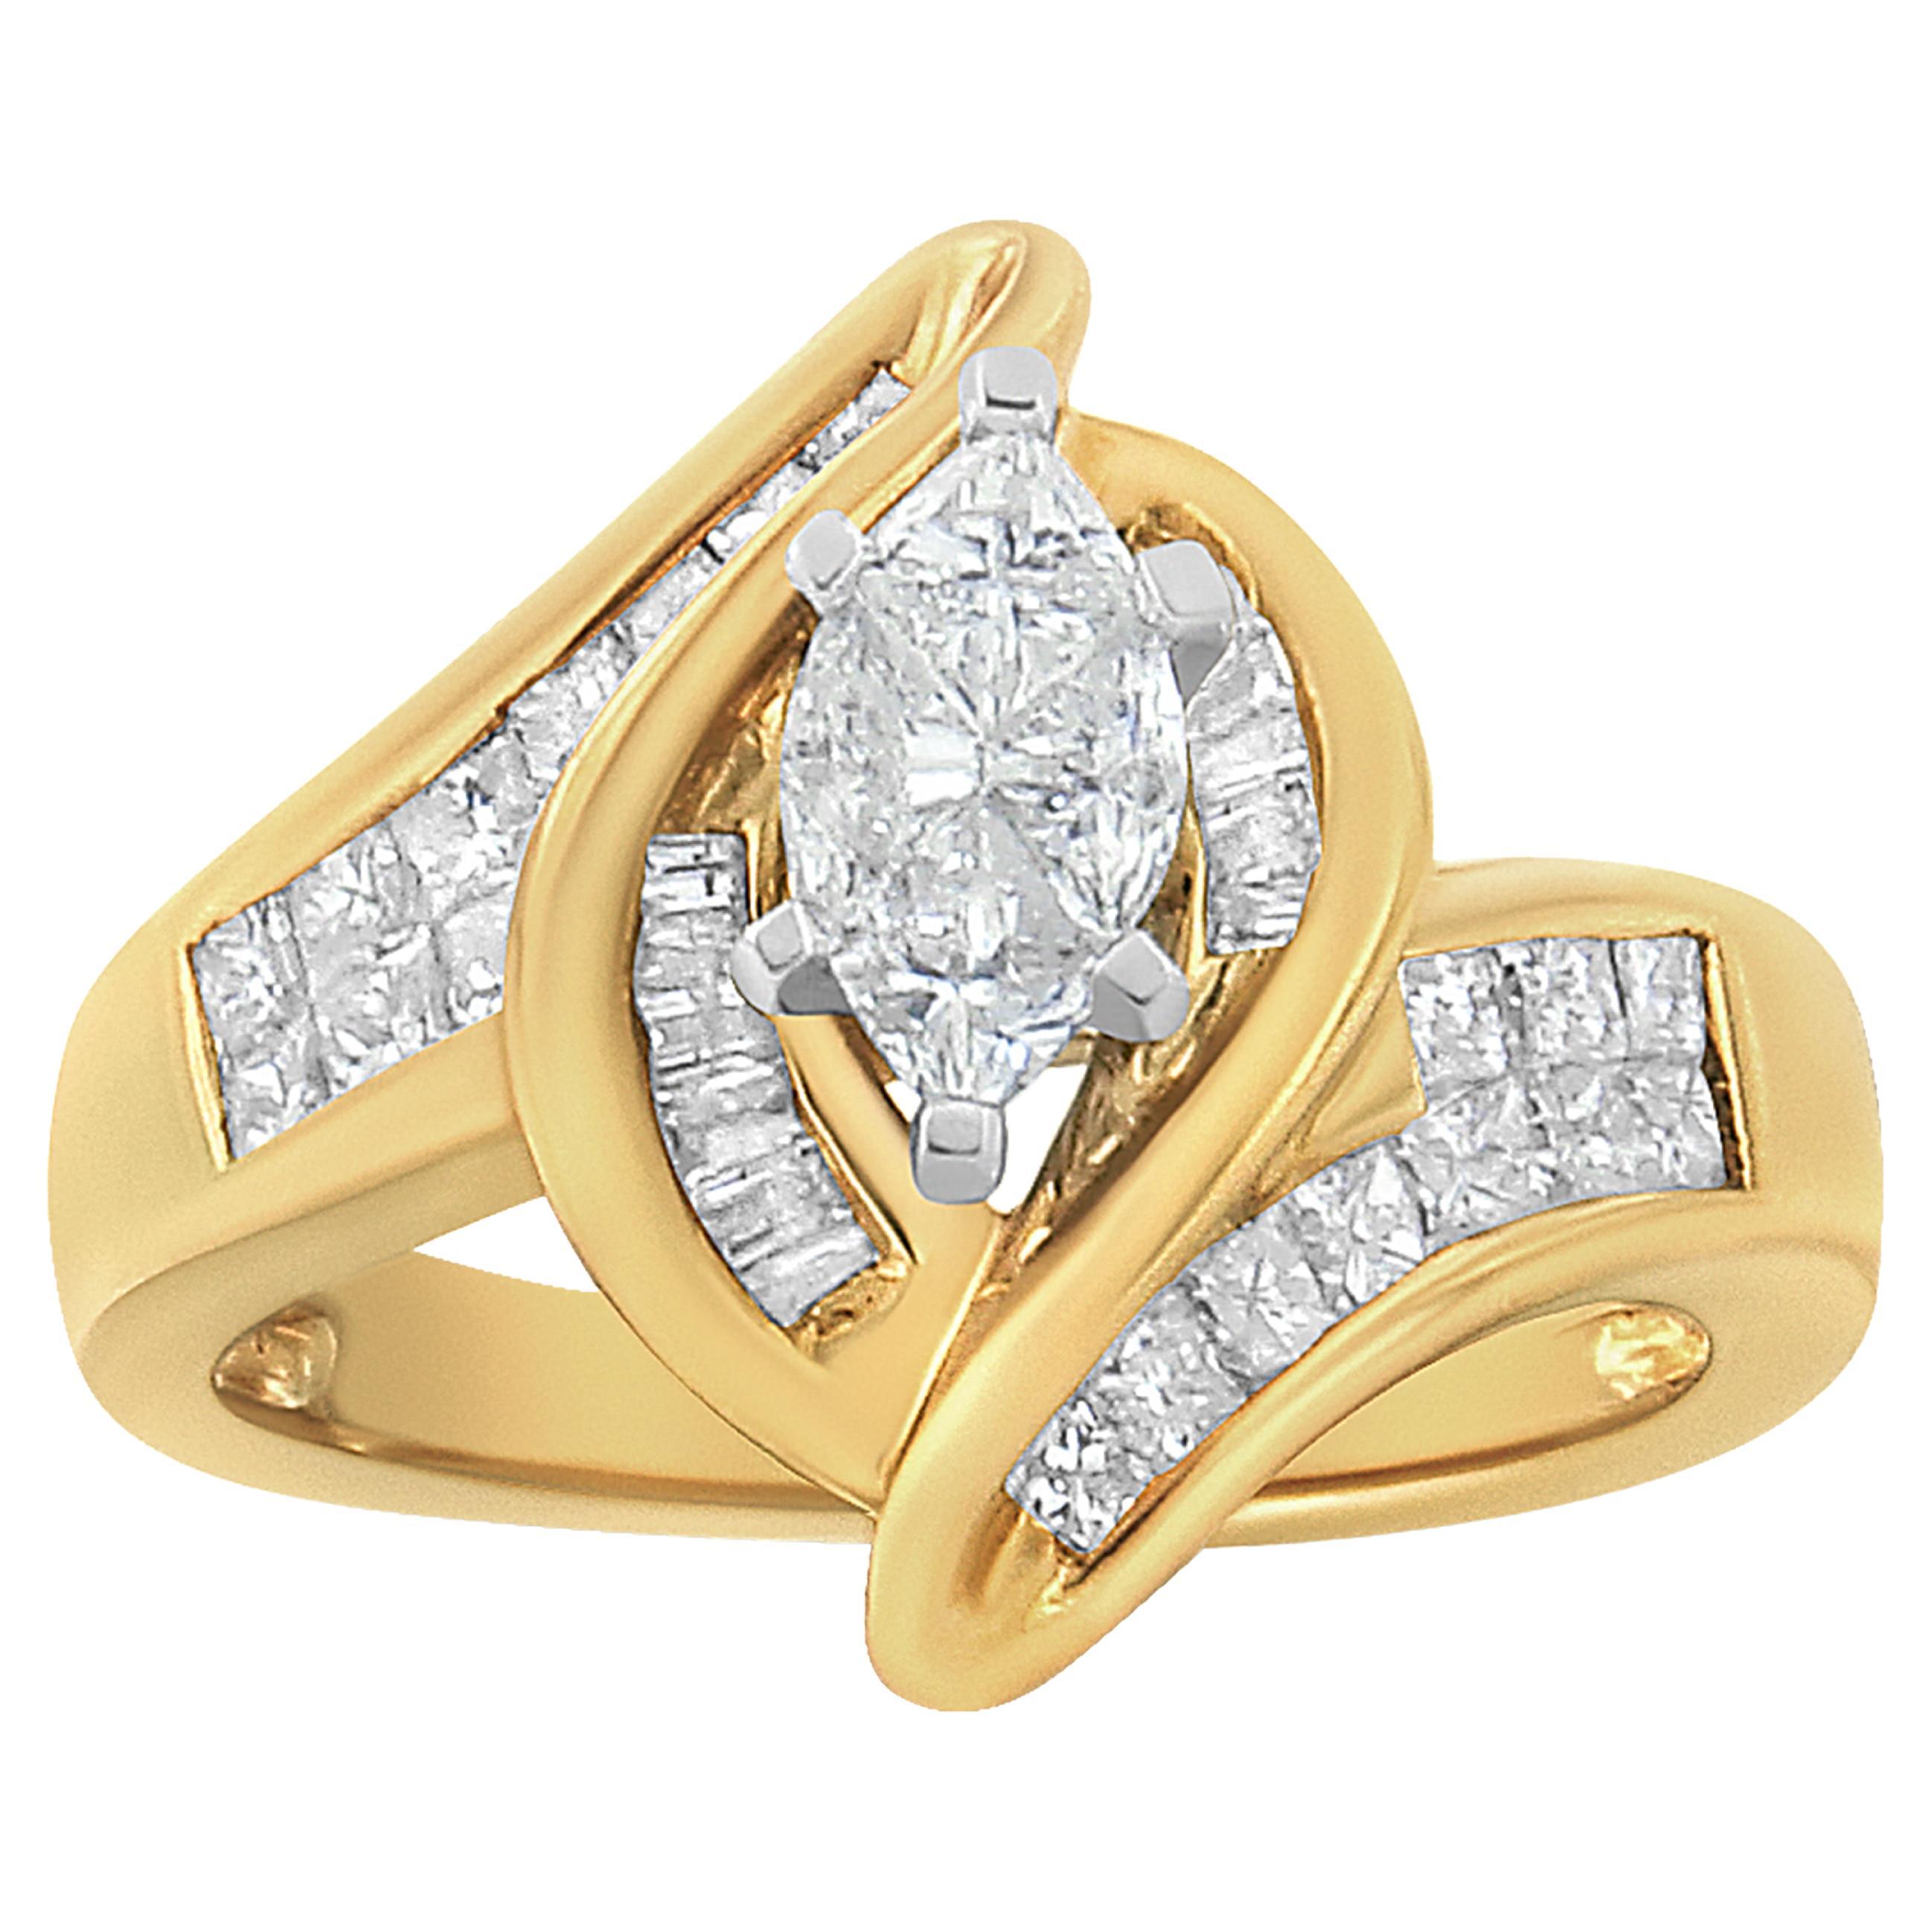 Marquise-förmiger Ring aus 18 Karat Gelbgold mit 1 1/4 Karat Diamanten